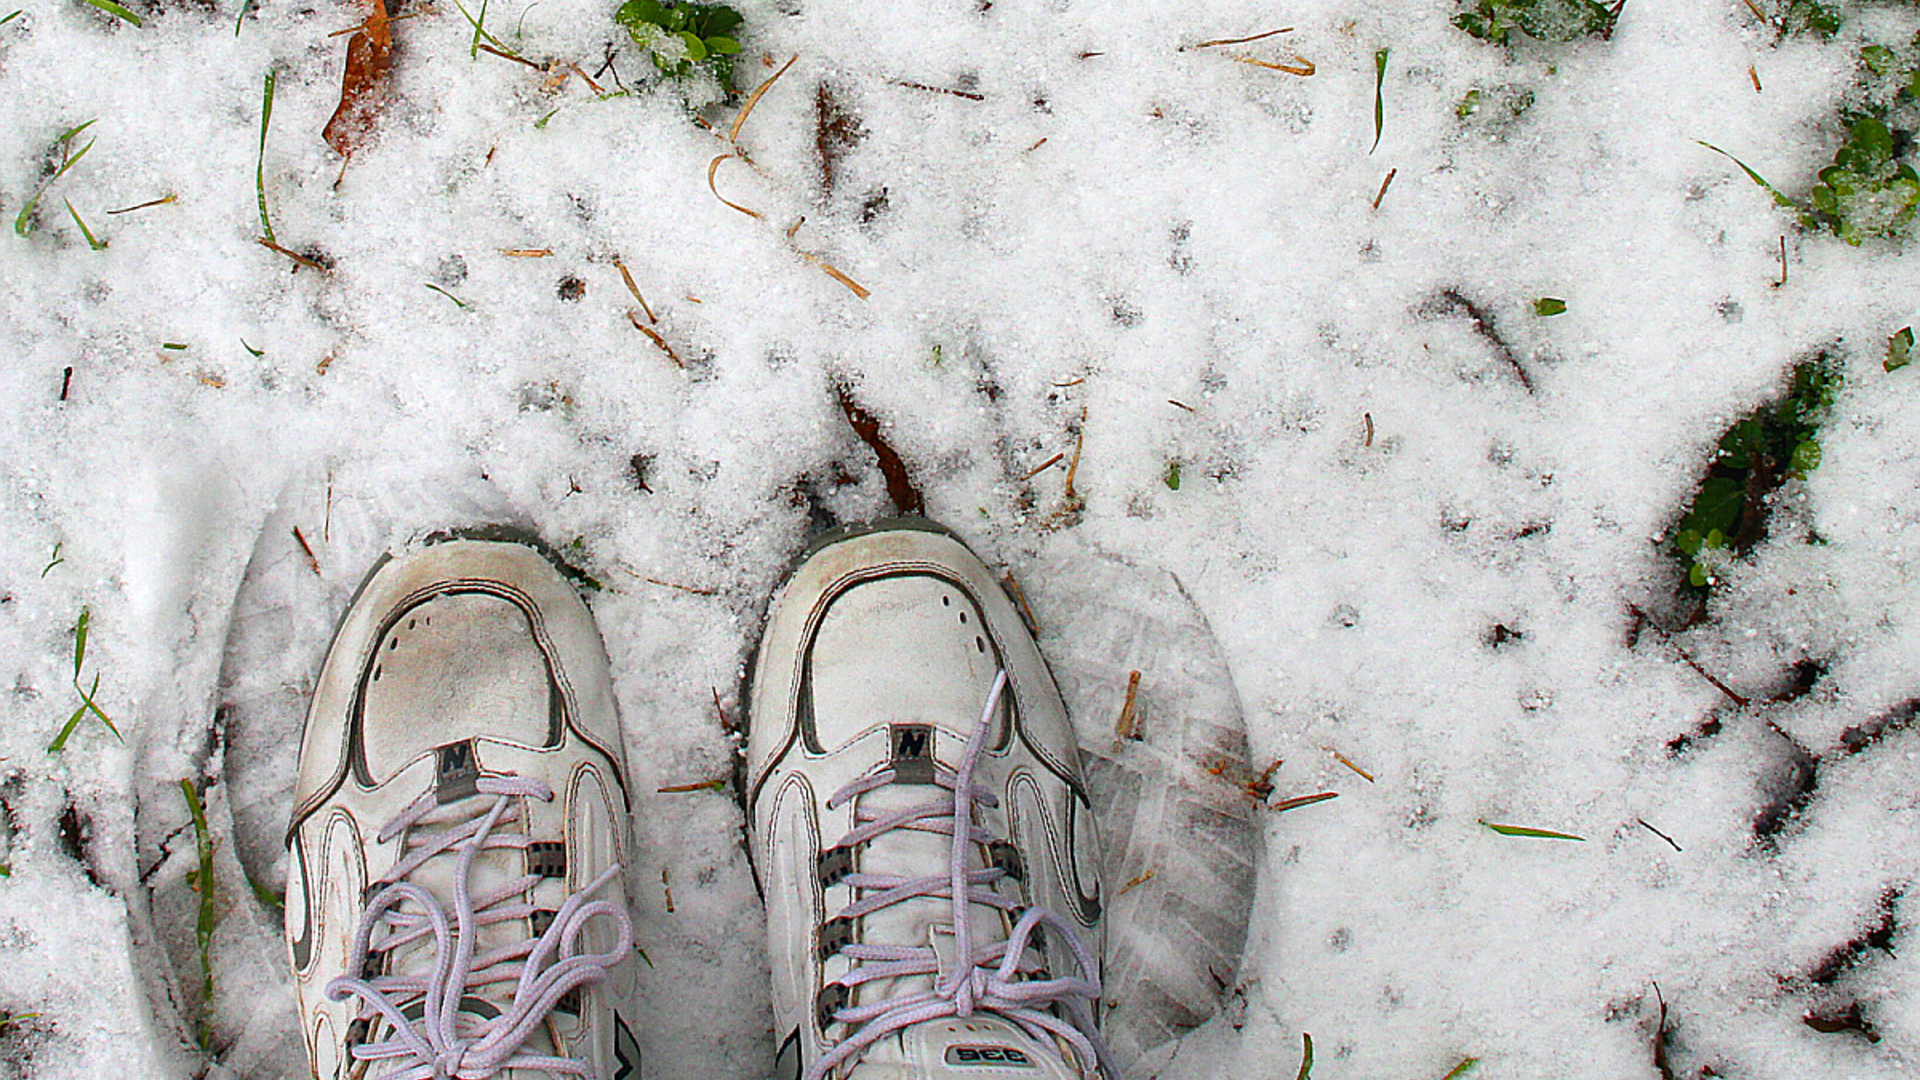 sneeuw-voeten foto jmtimages